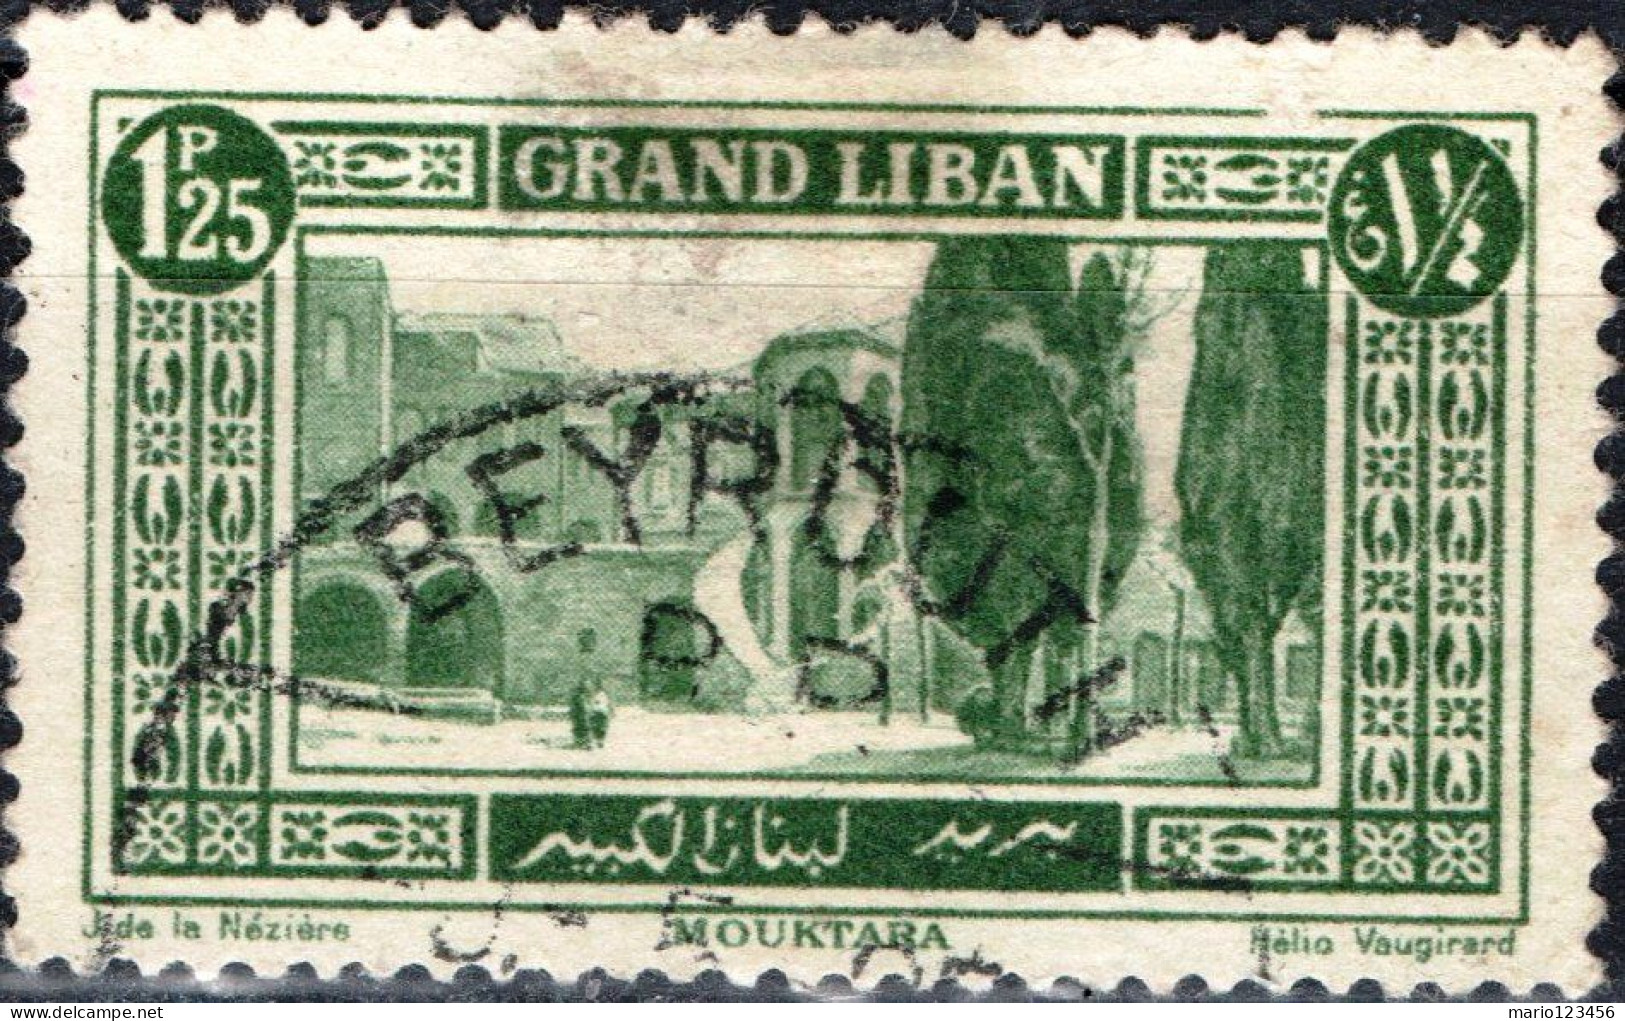 LIBANO, LEBANON, PAESAGGI, LANDSCAPES, 1925, USATI Scott:LB 55, Yt:FR-LB 55 - Usati